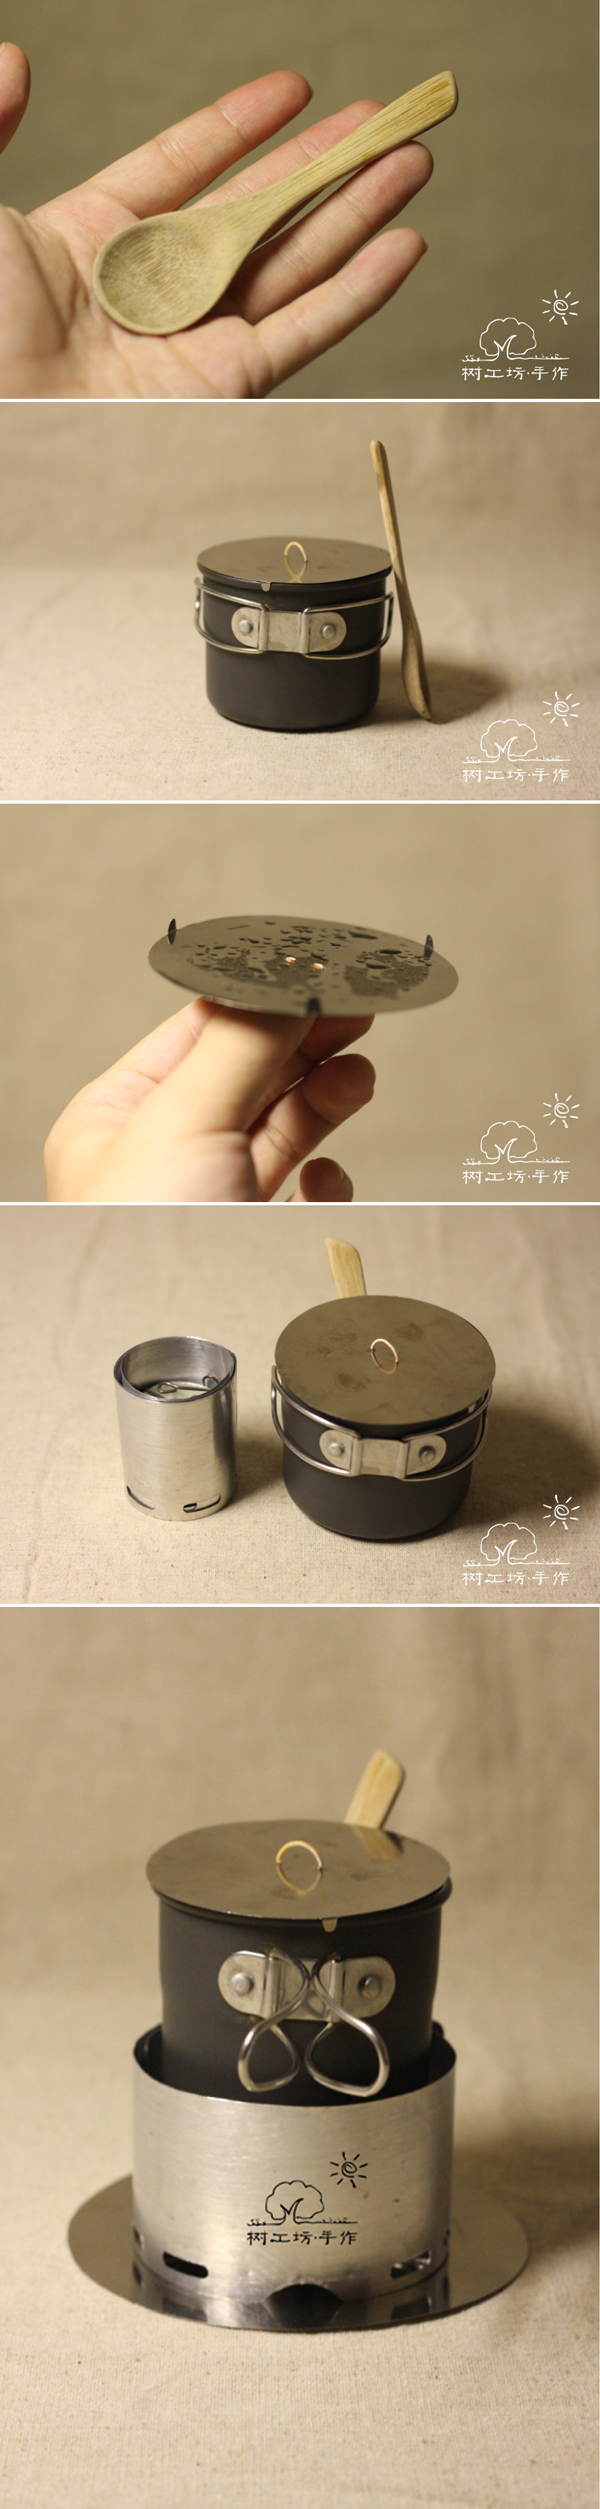 文艺青年专用煮咖啡煮茶利器4.jpg